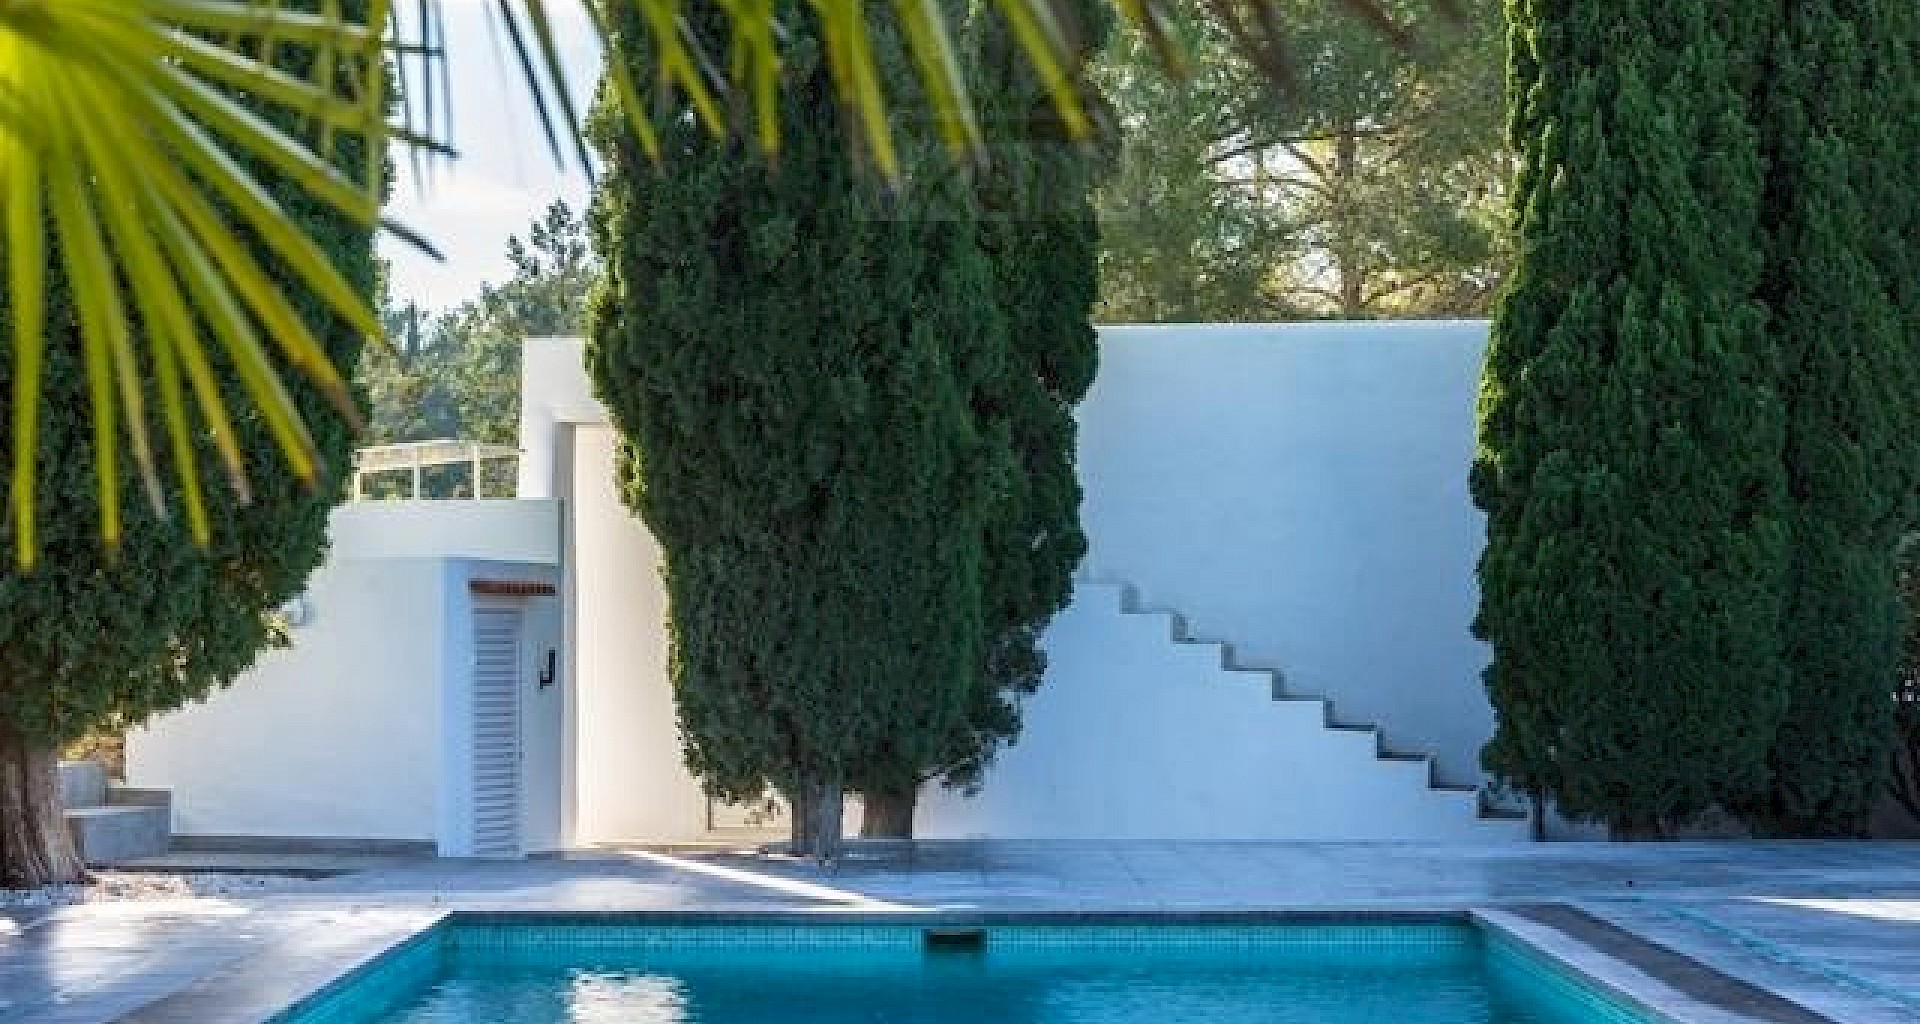 KROHN & LUEDEMANN Komplett renoviertes Haus auf Ibiza mit Pool und viel Privatsphäre Benimussa (16)